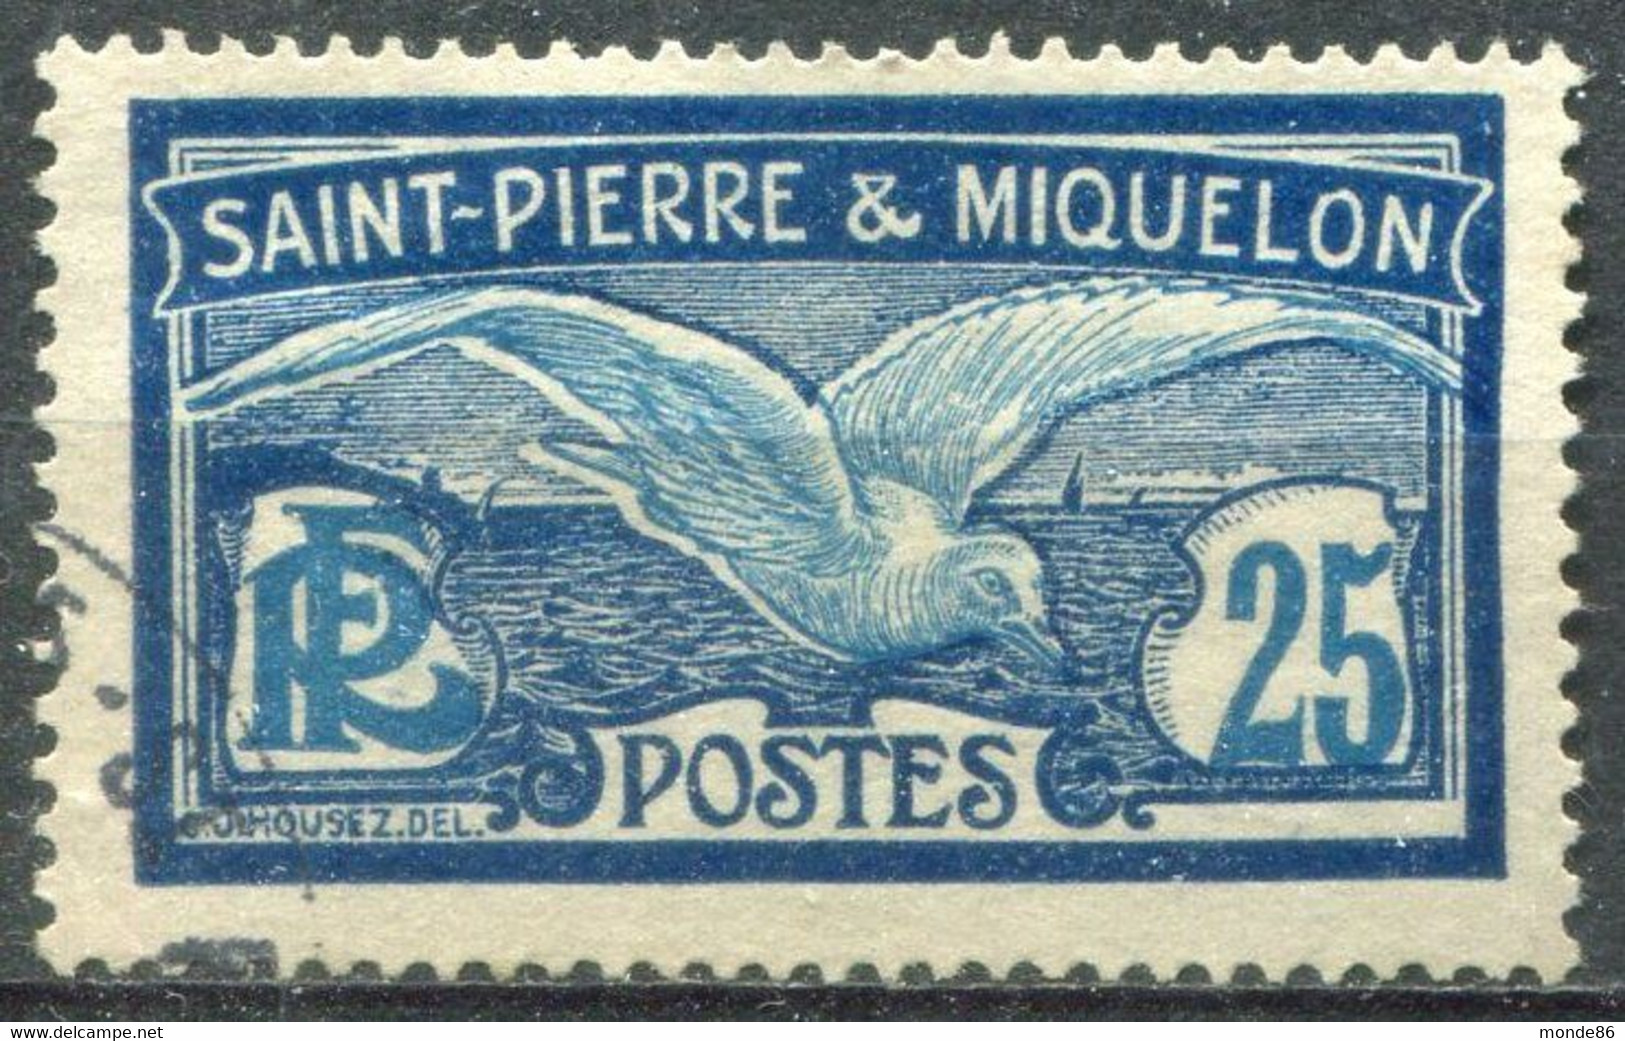 SAINT PIERRE ET MIQUELON - Y&T  N° 84 (o) - Used Stamps